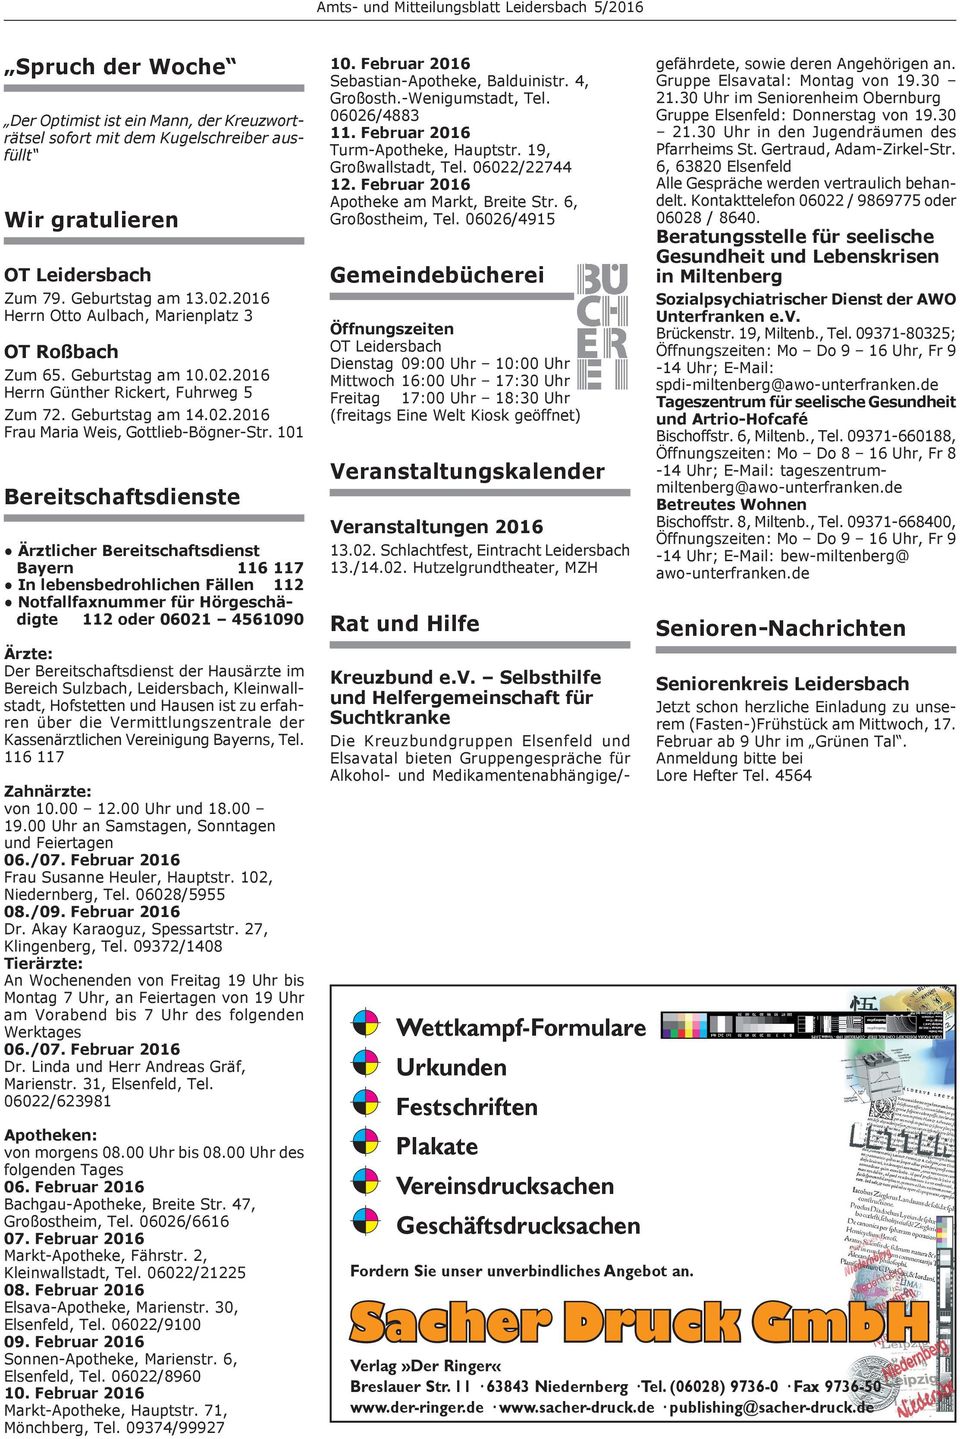 101 Bereitschaftsdienste Ärztlicher Bereitschaftsdienst Bayern 116 117 In lebensbedrohlichen Fällen 112 Notfallfaxnummer für Hörge schädigte 112 oder 06021 4561090 Ärzte: Der Bereitschaftsdienst der